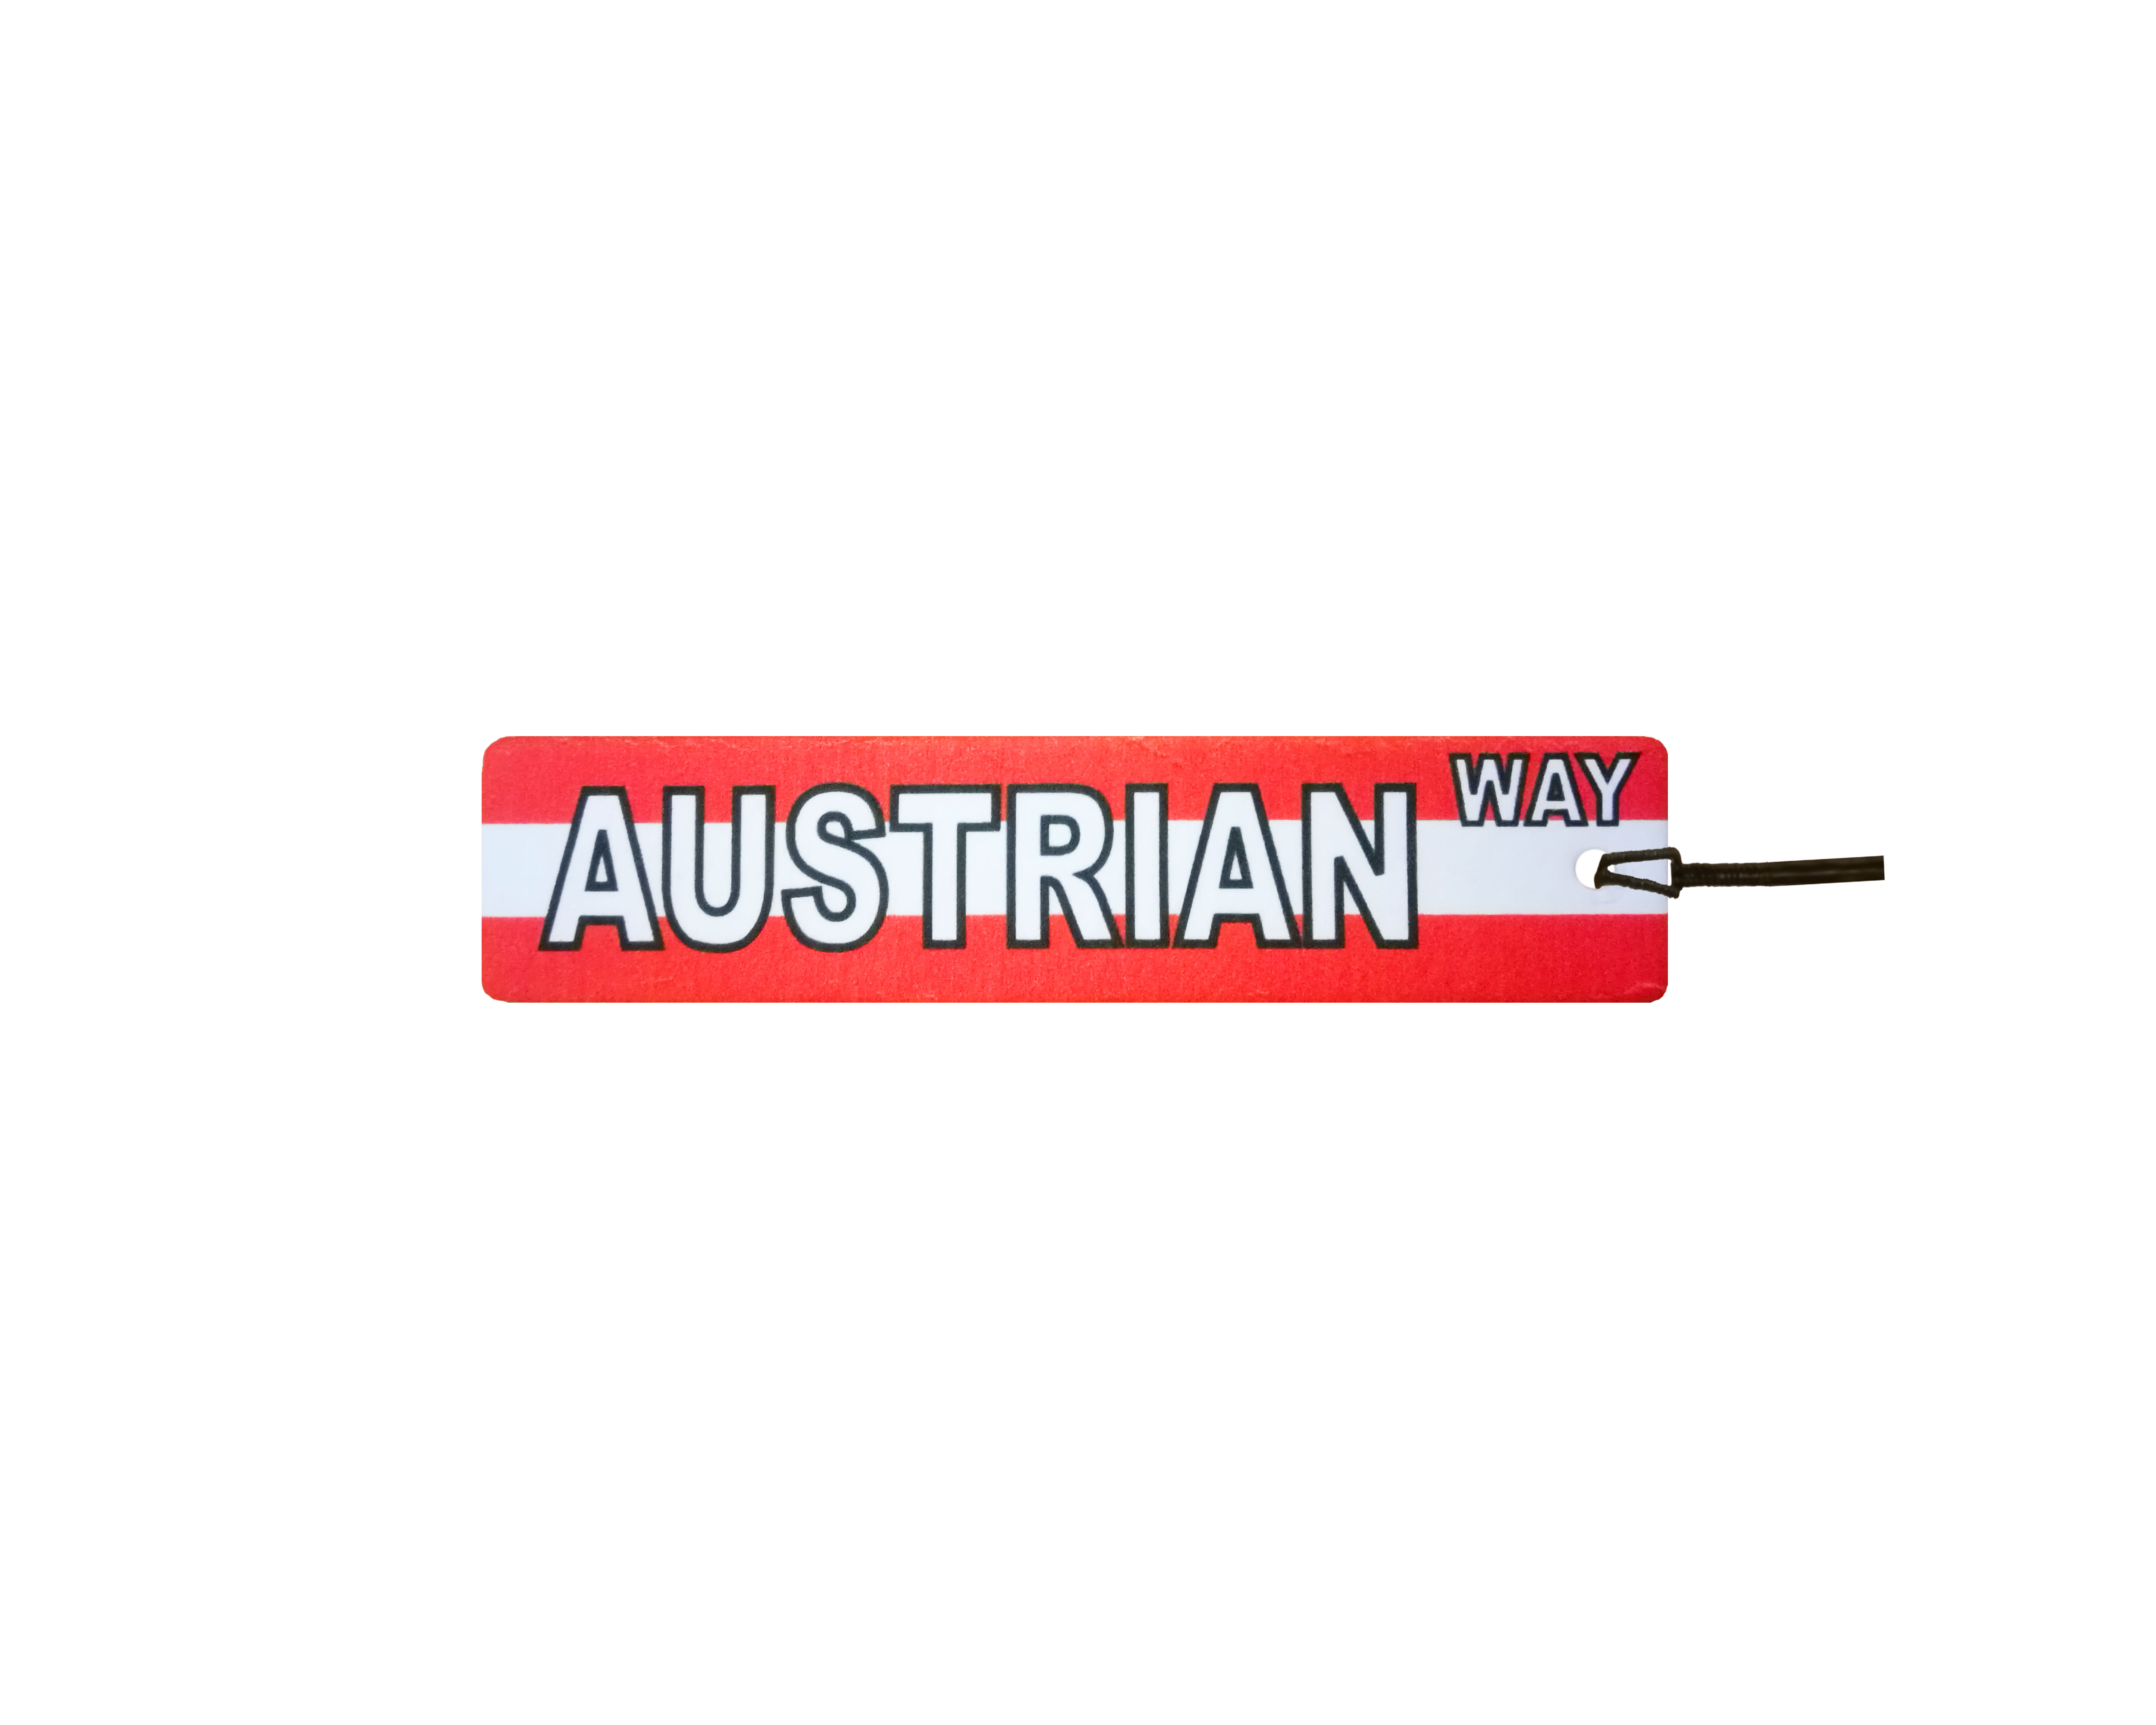 Austrian Way Street Sign